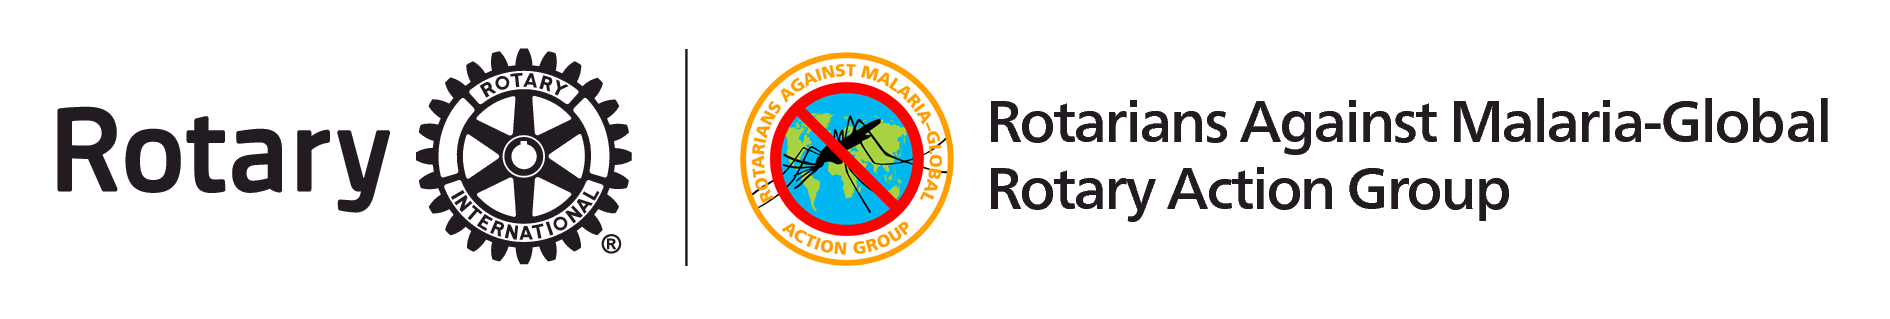 RAG-Malaria logo